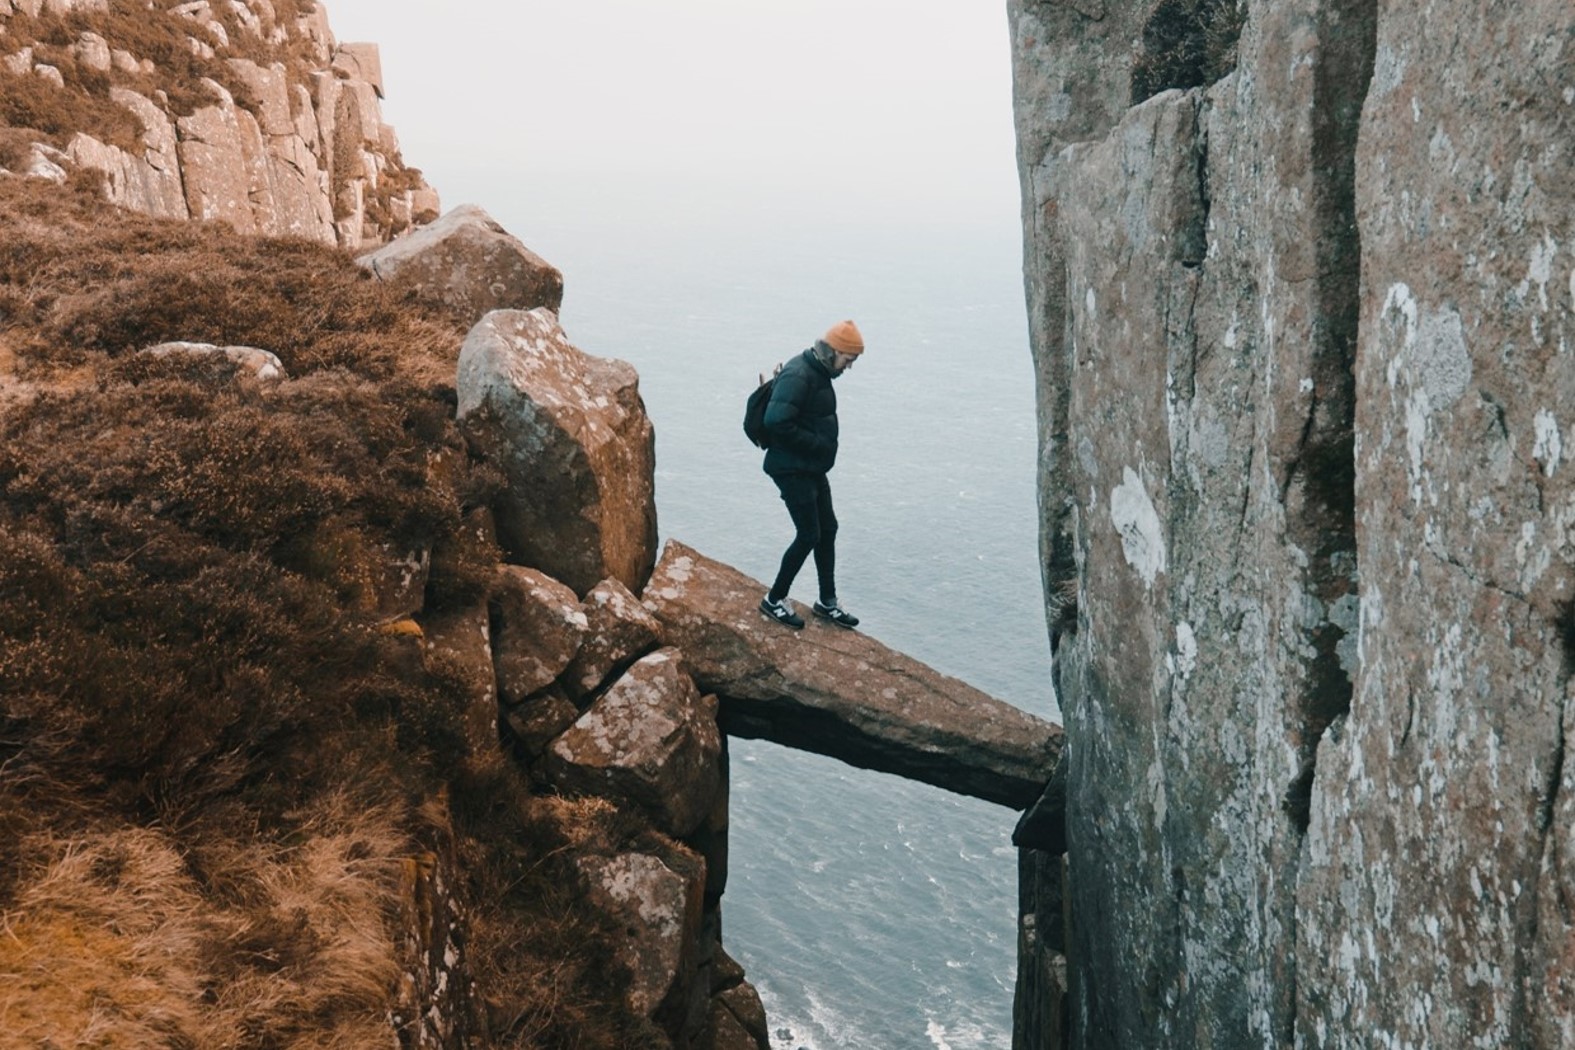 Homme prenant des risques sur un pont en bloc de pierre en équilibre au dessus d’un précipice.